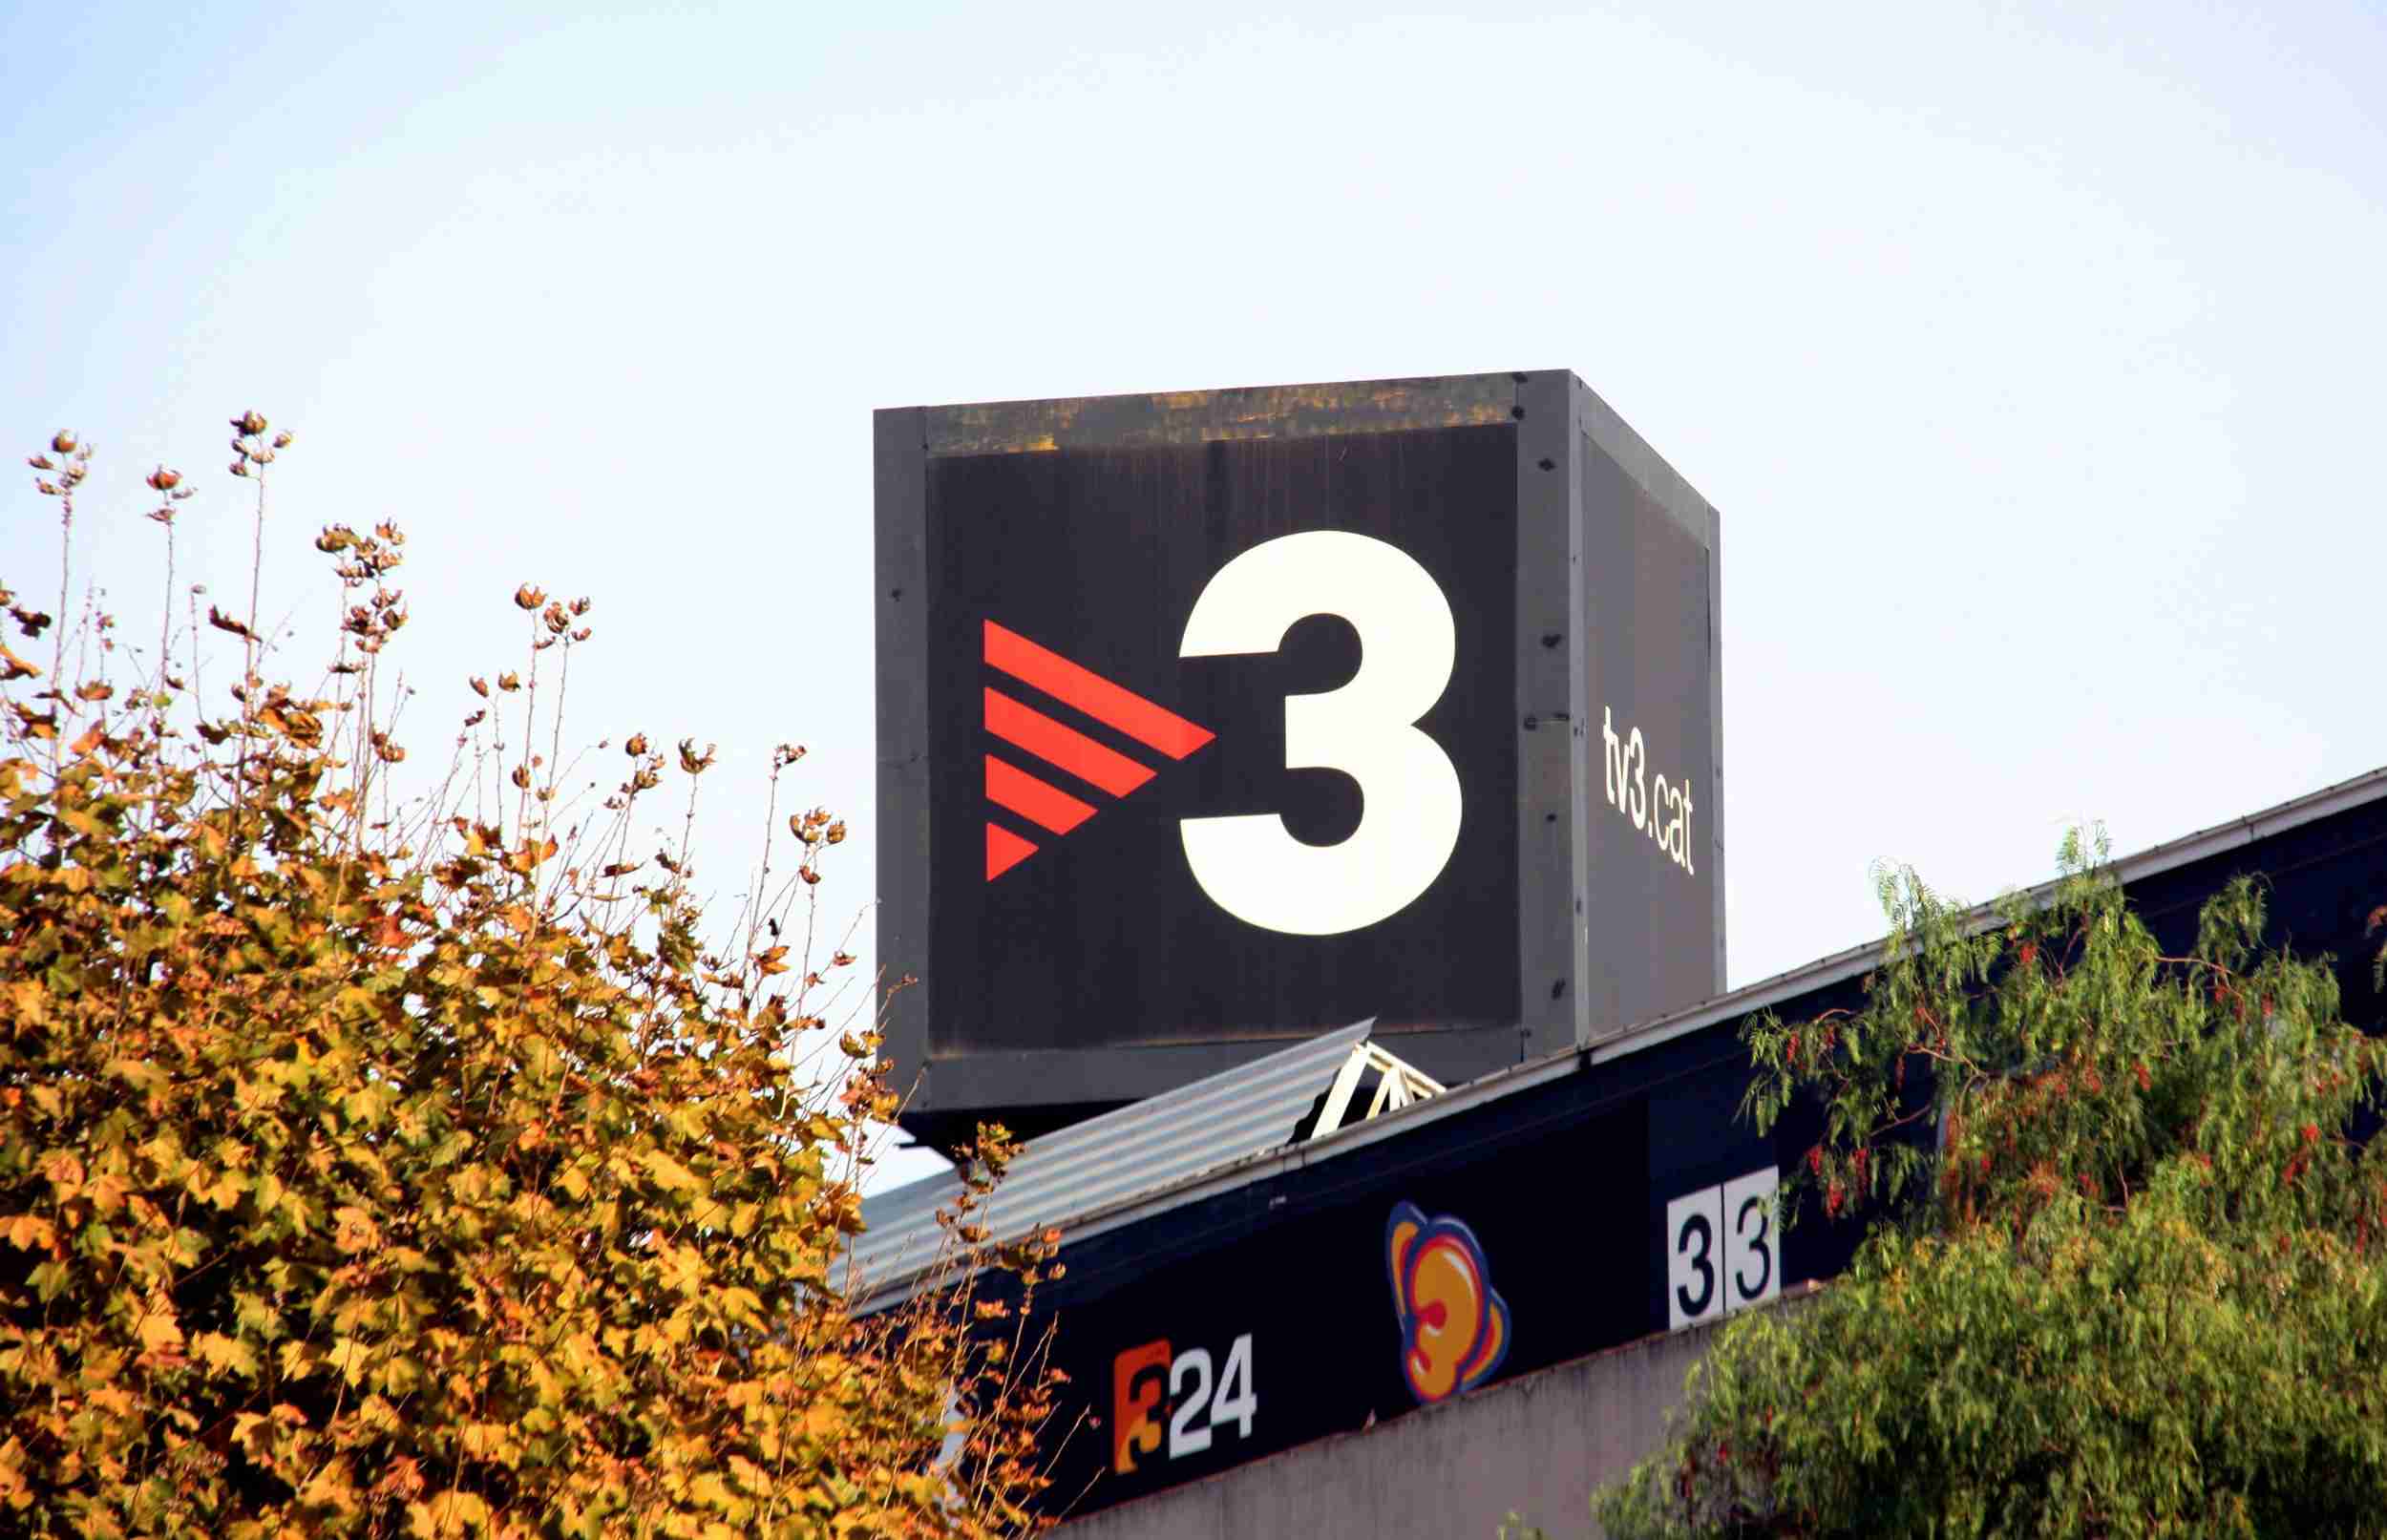 El PSC tilda a TV3 de "independentismo radical" y expone un plan para renovarla